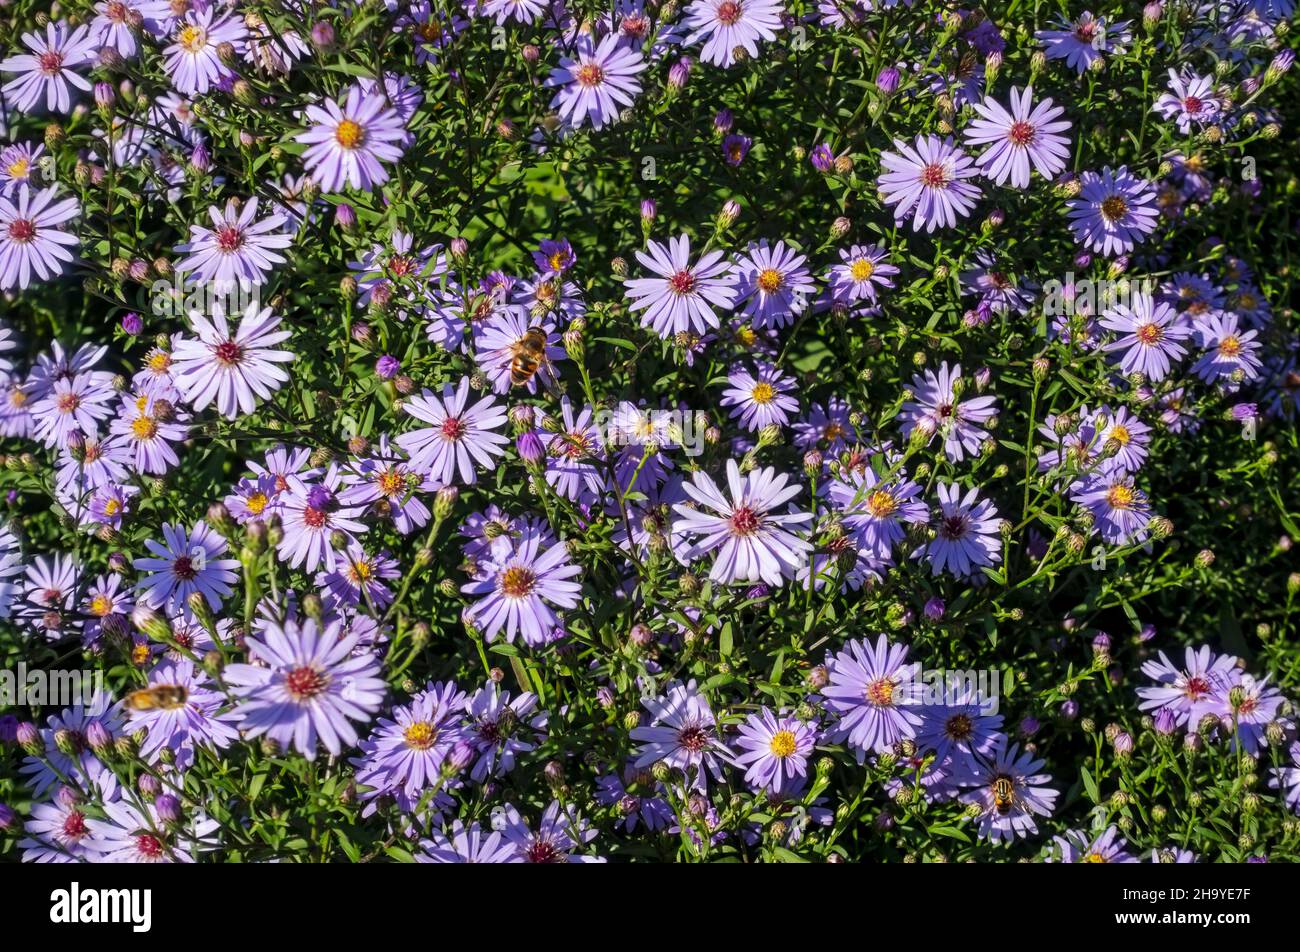 Nahaufnahme der lila Aster Blume Blumen blühende michaelmas Gänseblümchen wächst im Garten im Herbst England UK Vereinigtes Königreich GB Großbritannien Stockfoto